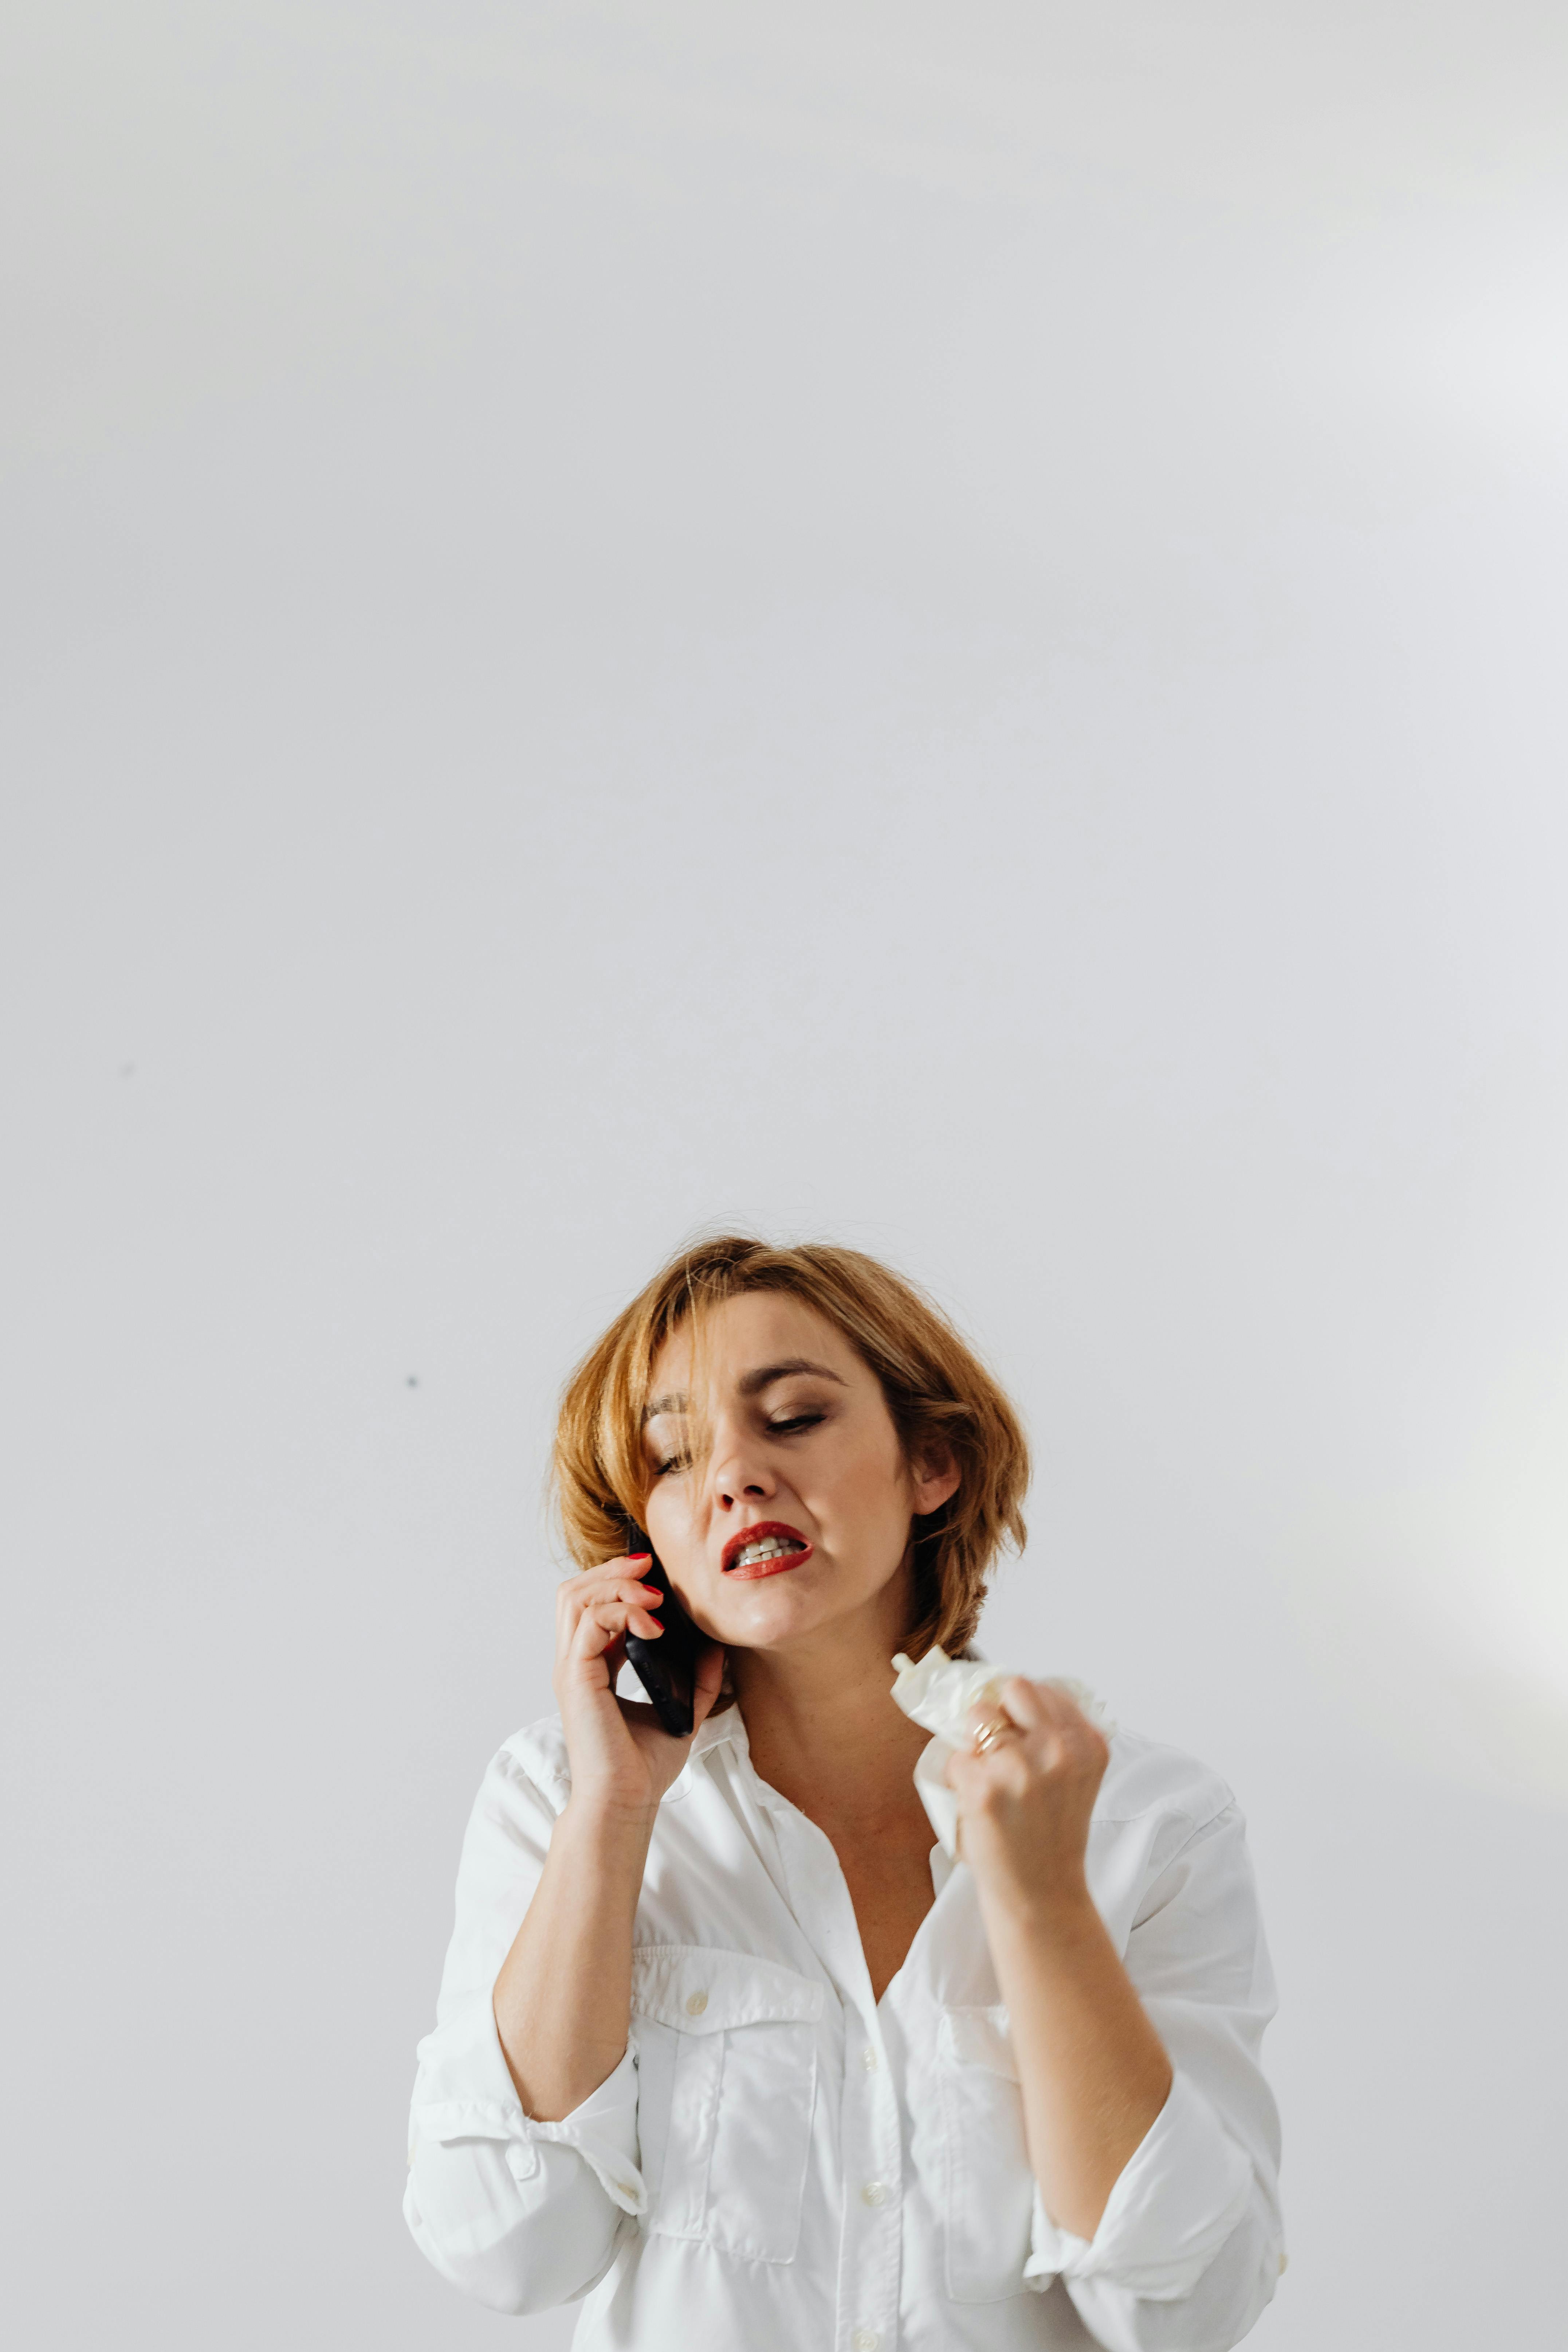 Mujer irritada habla por teléfono | Fuente: Pexels